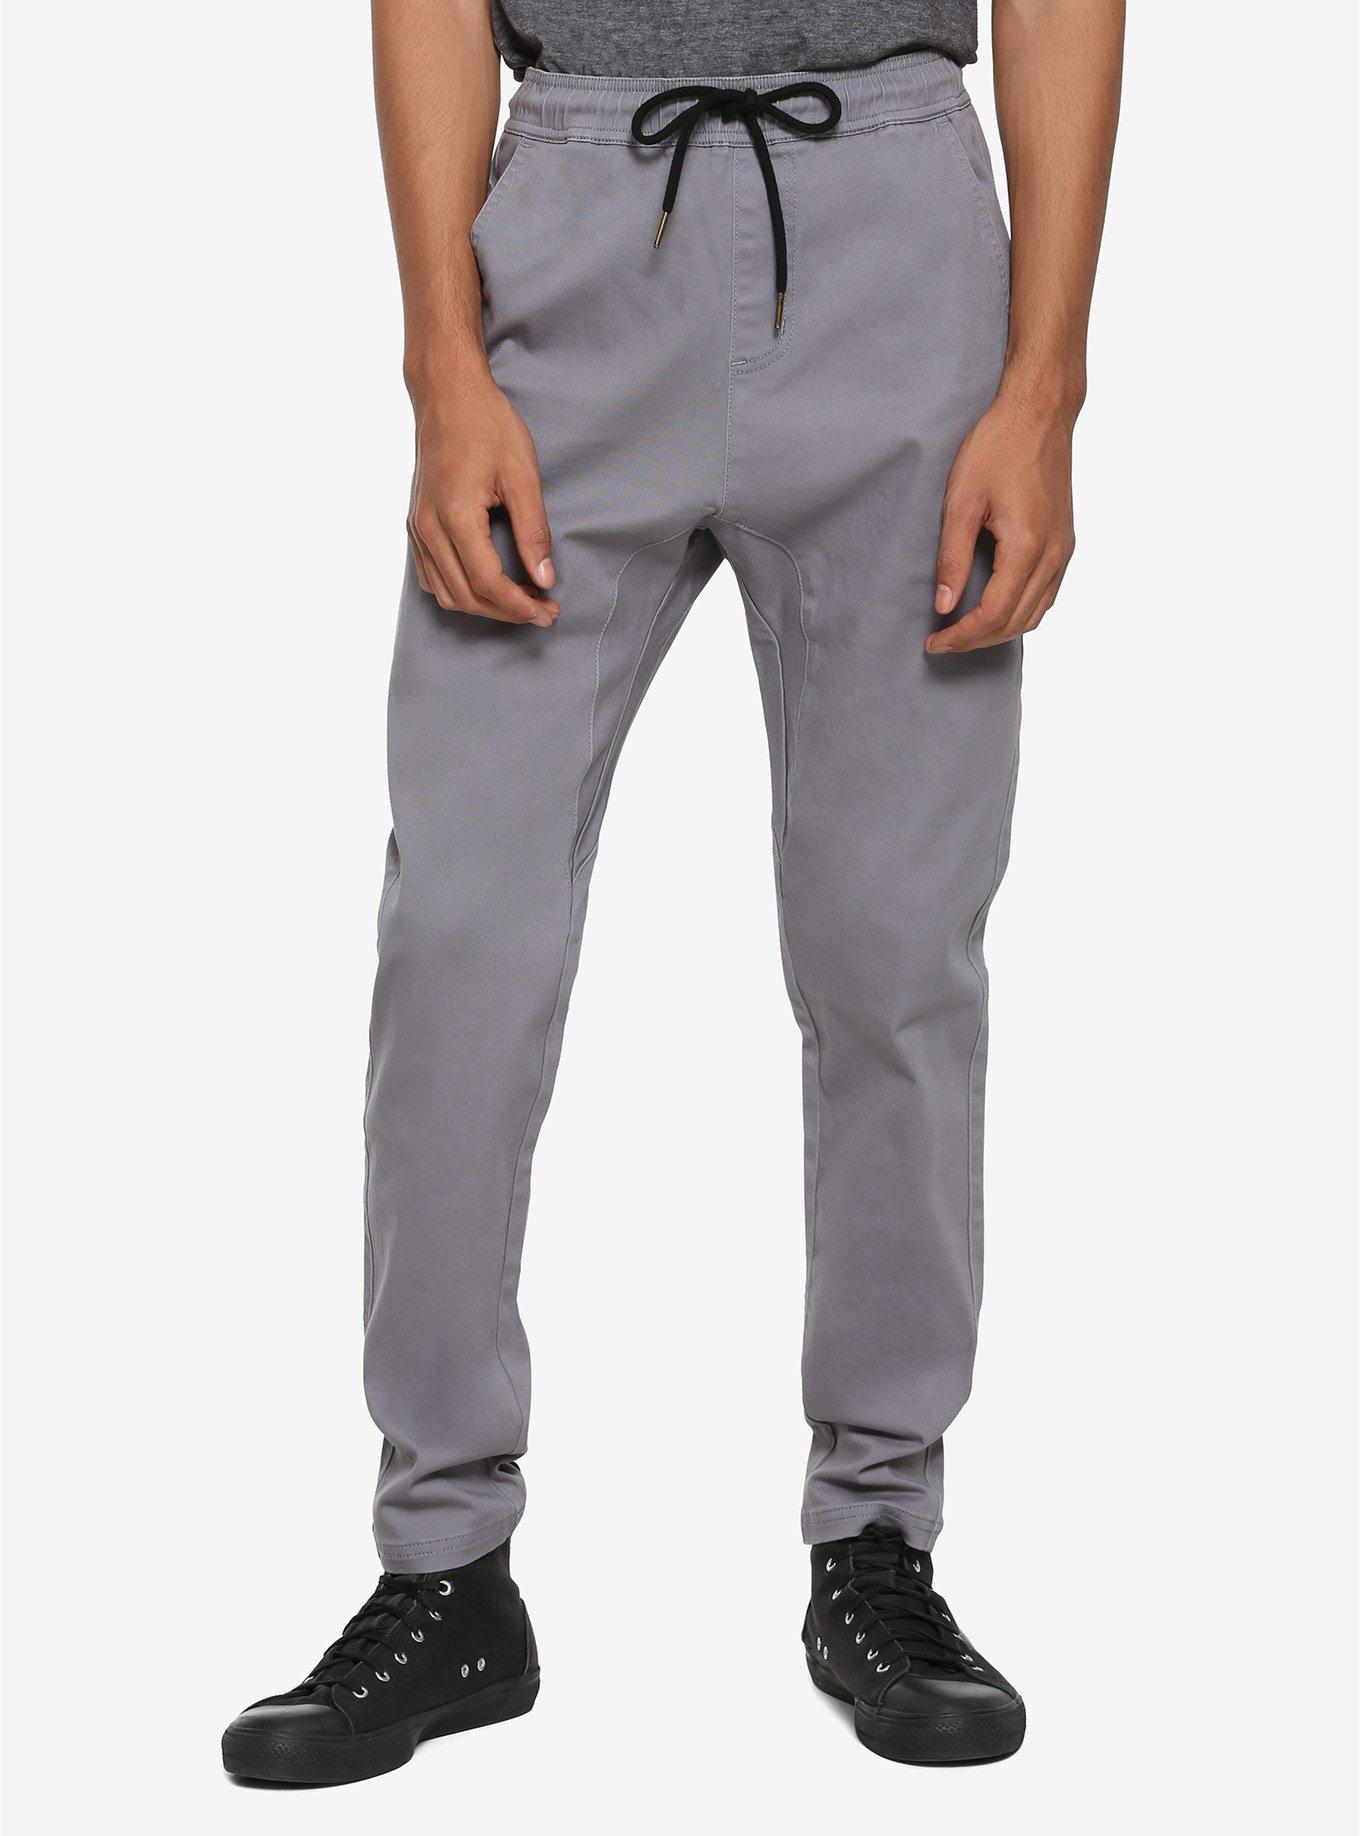 Grey Drawstring Pants, GREY, hi-res